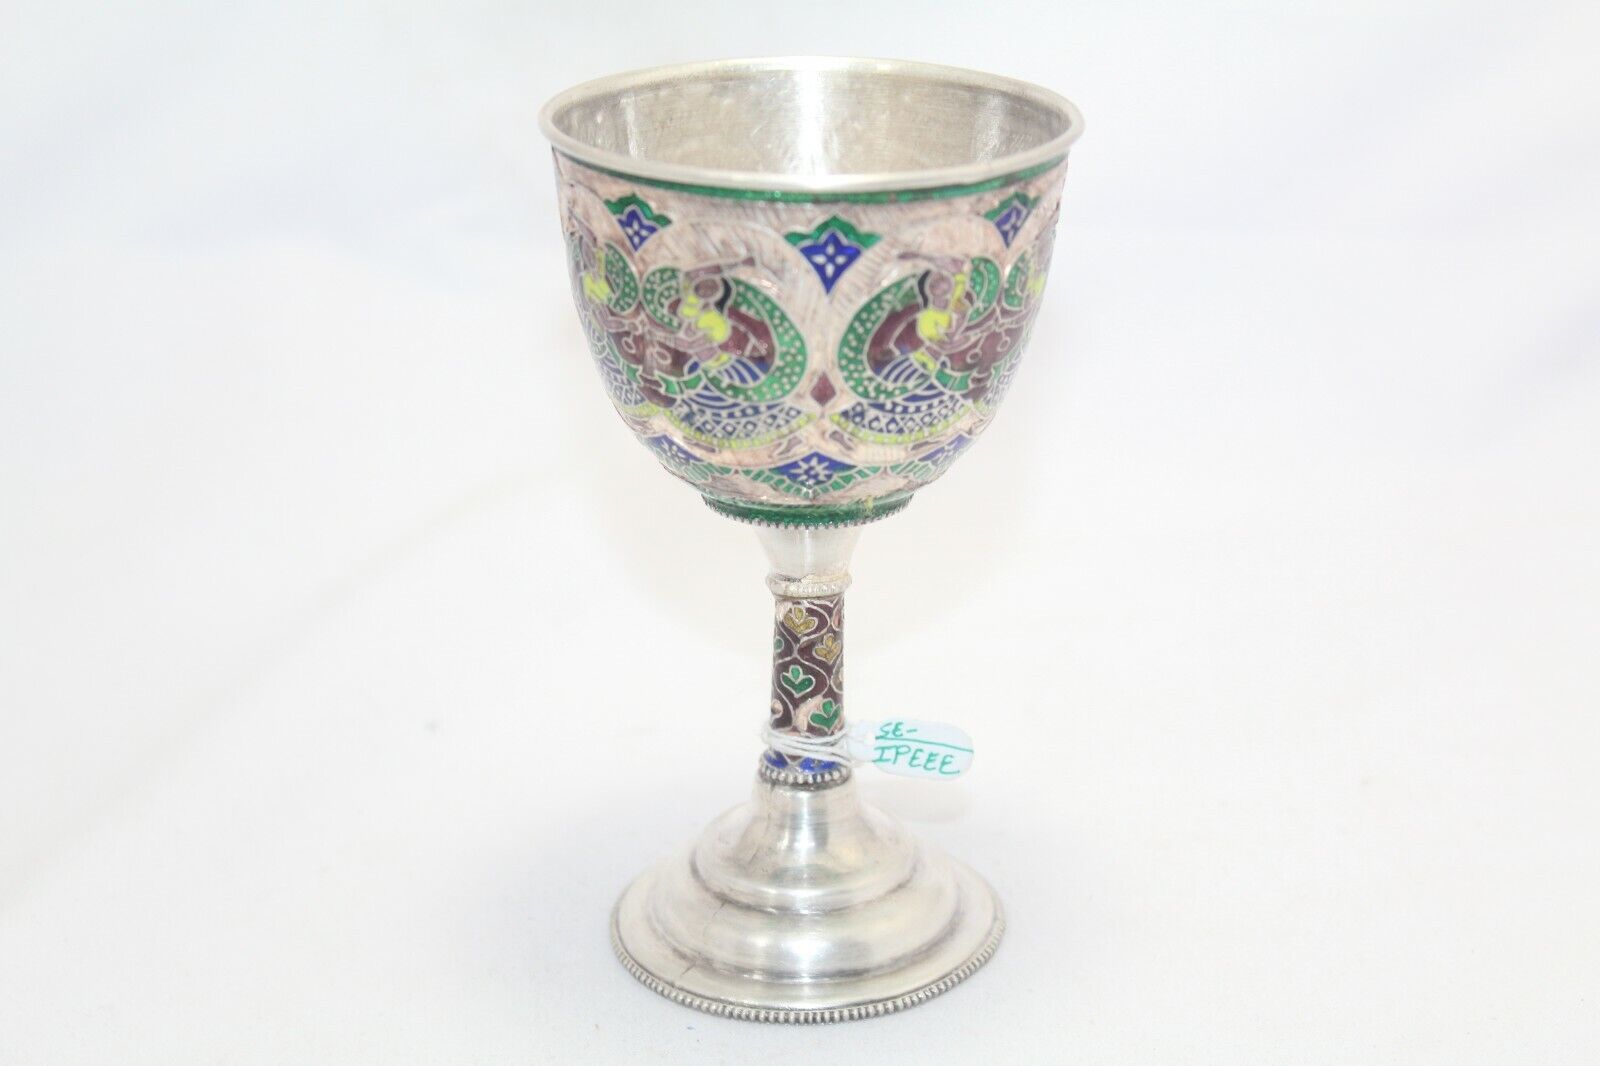 Wine Goblet Glass Silver Enamel Sterling Antique Vintage 925 Hip Handmade B68